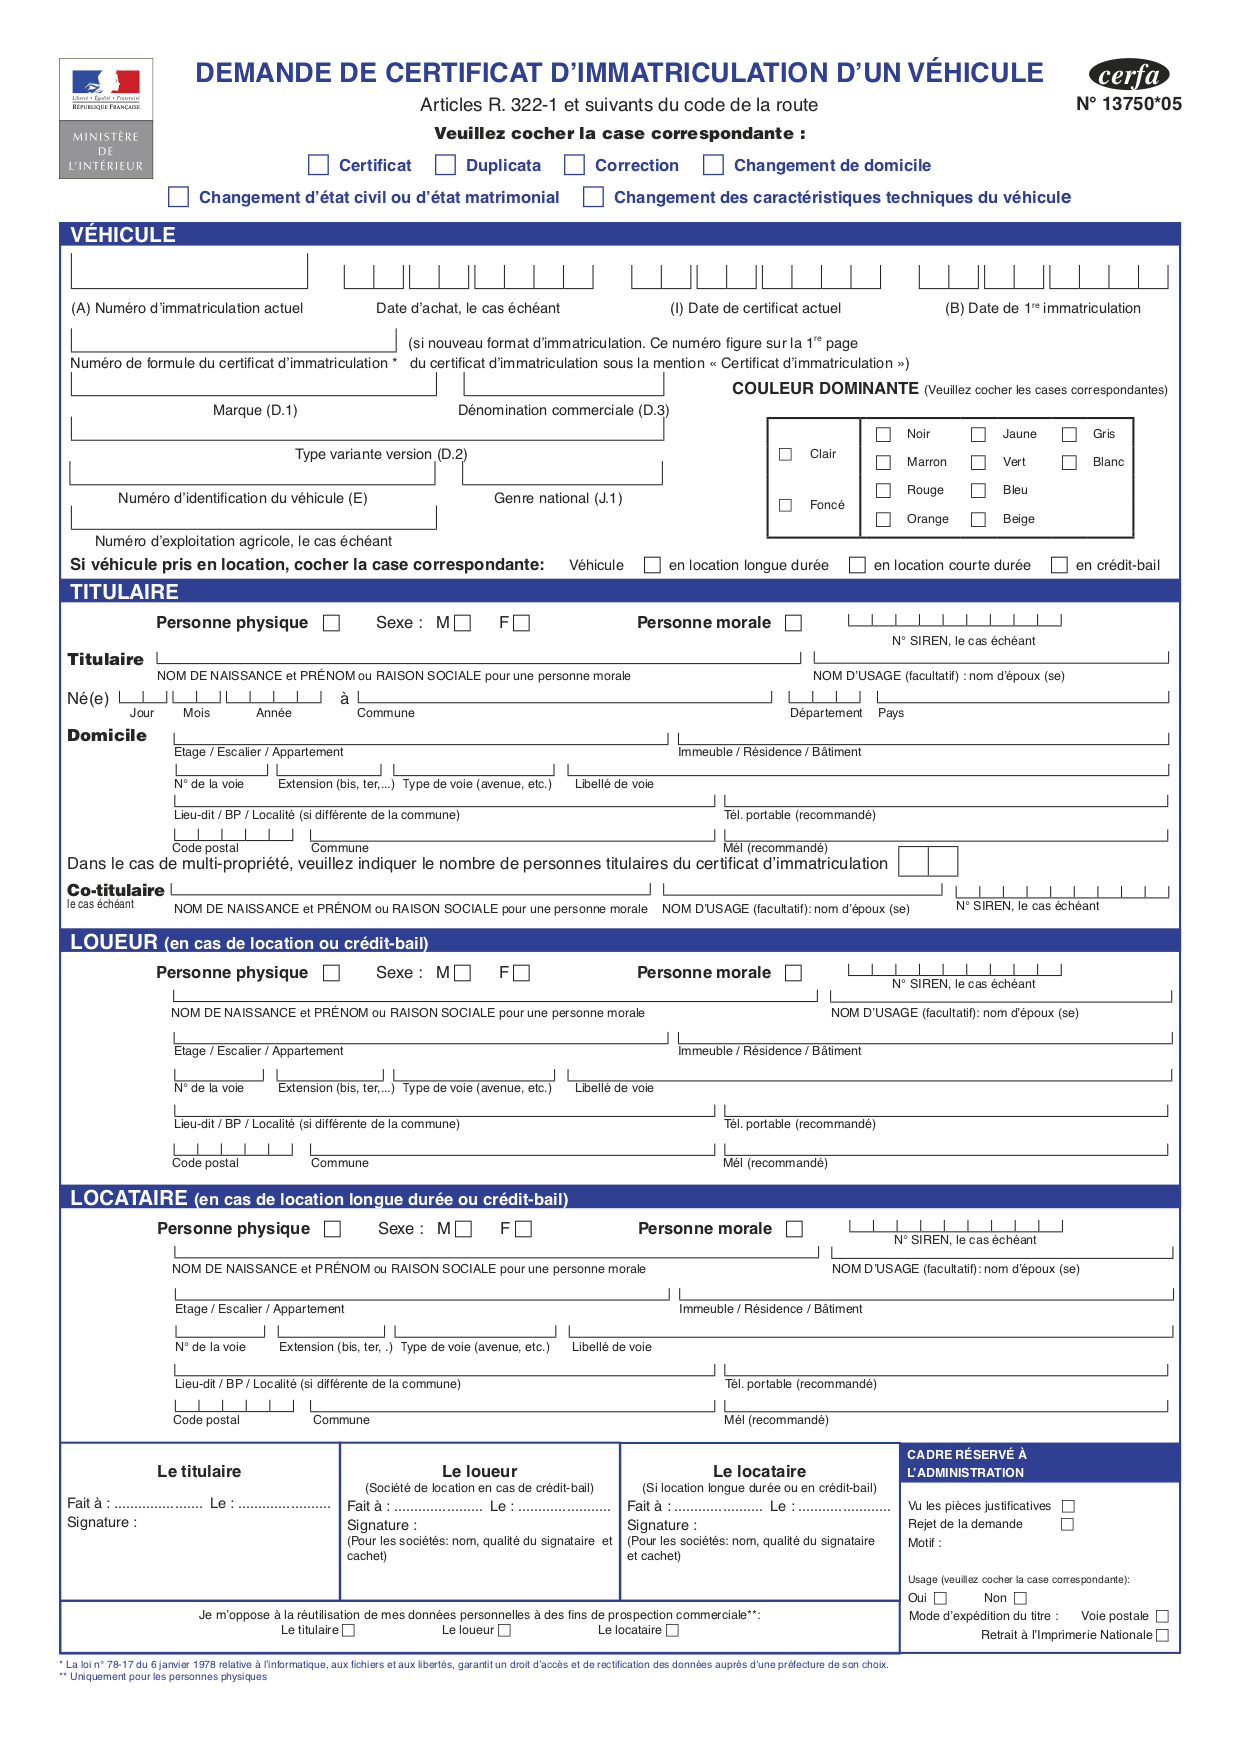 Cerfa de Demande de Certificat d’Immatriculation (CERFA 13750*05) ou formulaire de demande de carte grise 